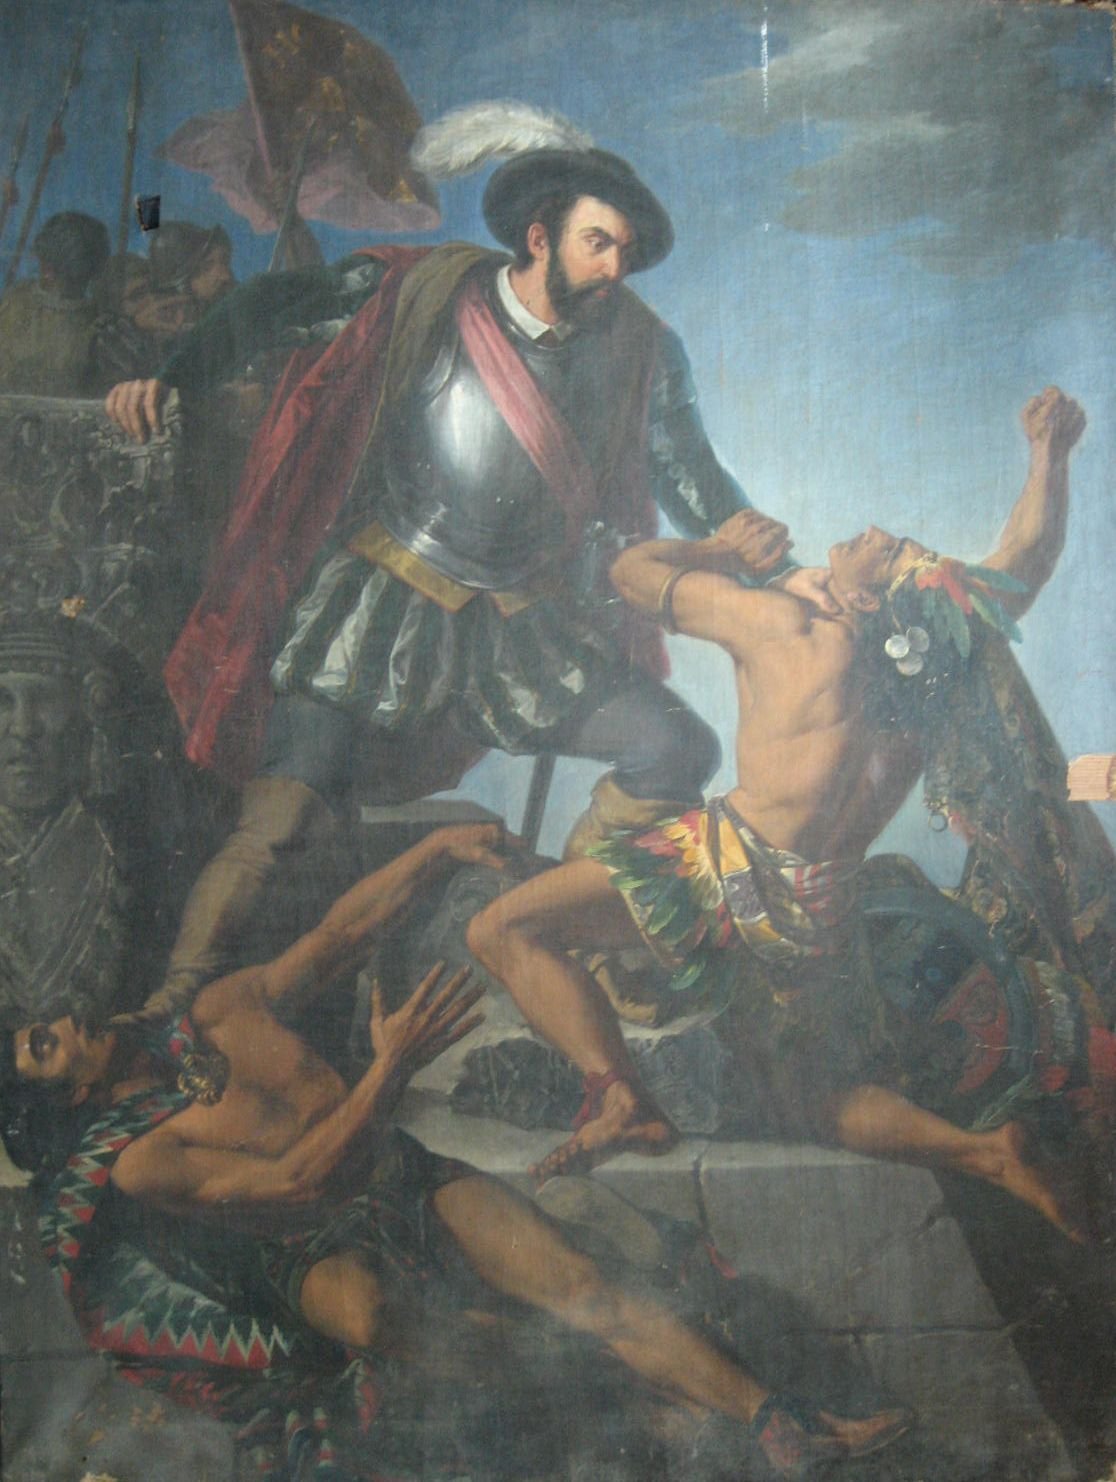 España homenajea a Hernán Cortés e irrita a los indios americanos